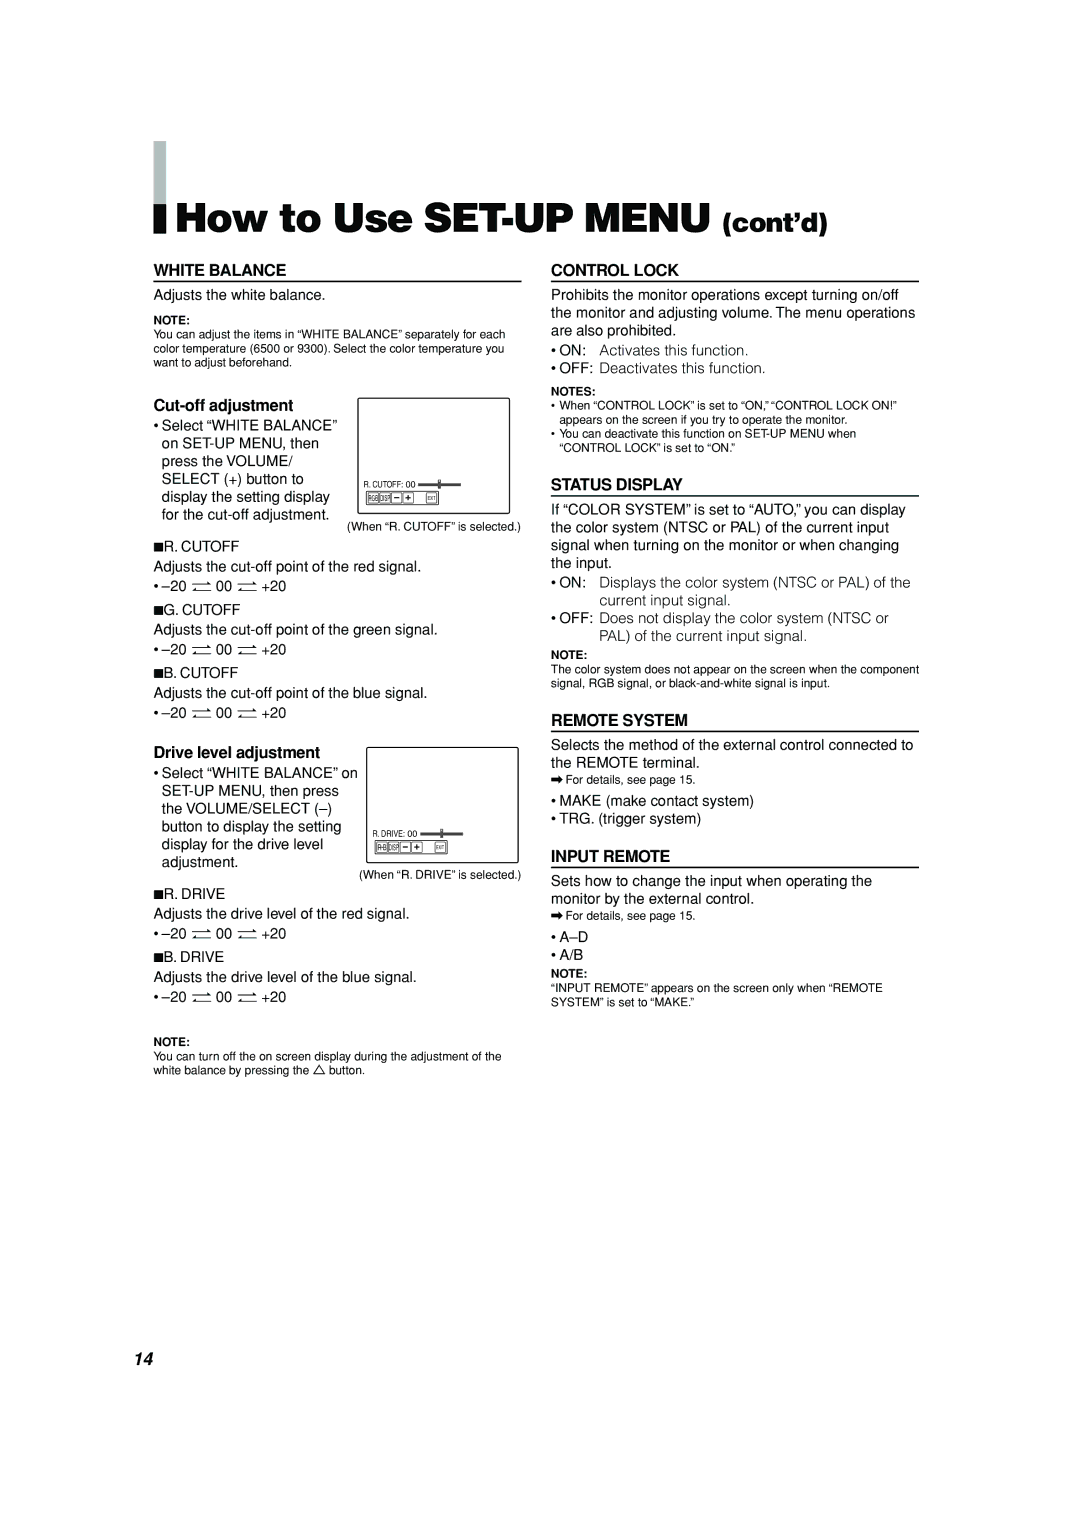 JVC TM-H150CG manual How to Use SET-UP Menu cont’d 